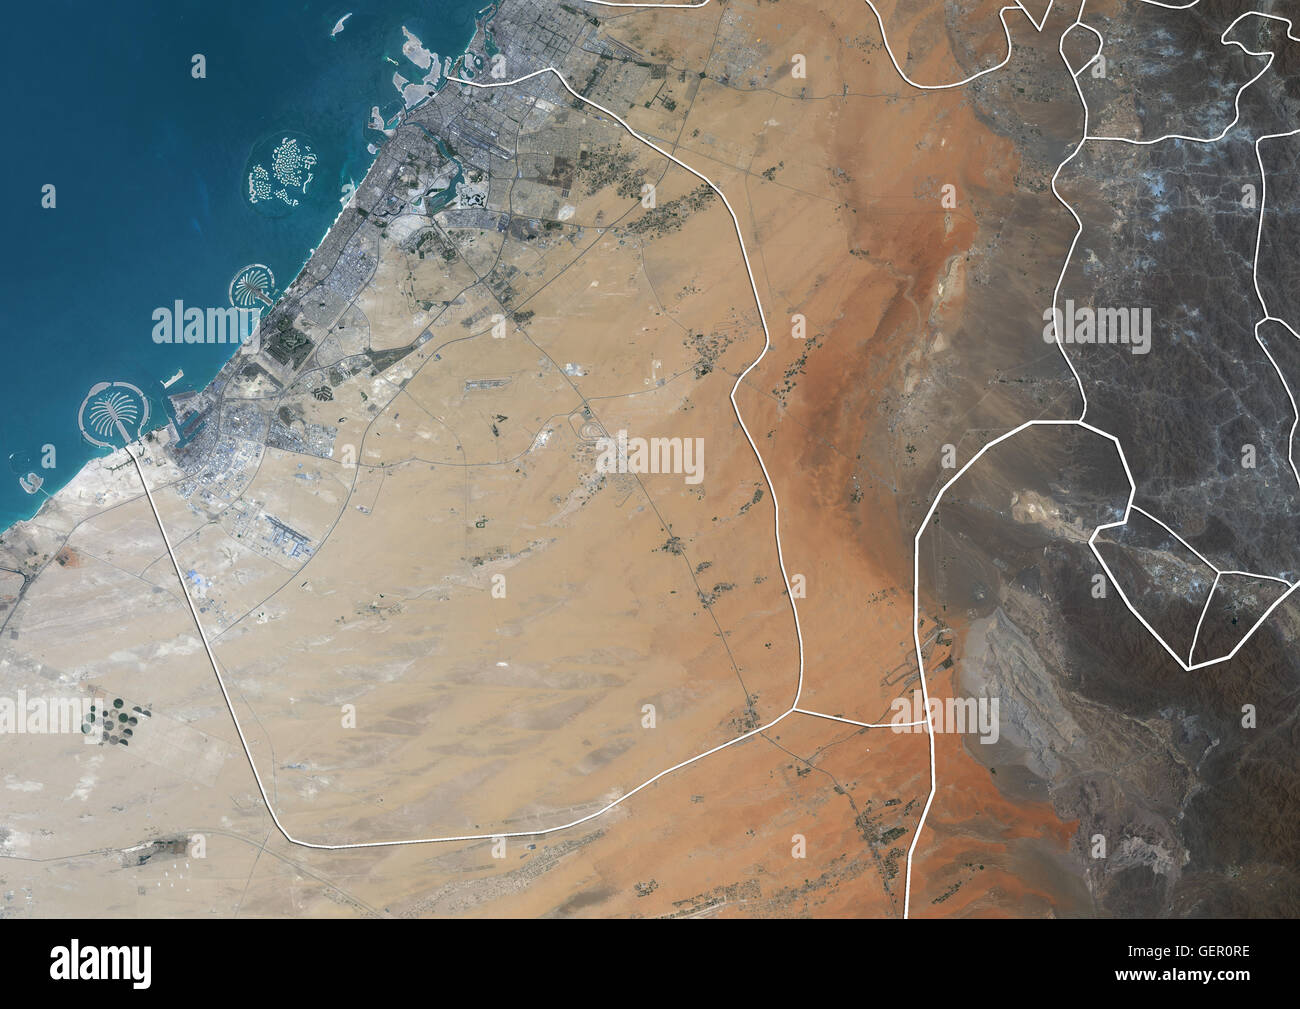 Vista satélite del Emirato de Dubai, Emiratos Árabes Unidos (con los límites del país). La imagen muestra el Jebel Ali Palm, Palm Jumeirah y las Islas del mundo. Esta imagen fue compilado a partir de los datos obtenidos por el satélite Landsat 8 en 2014. Foto de stock